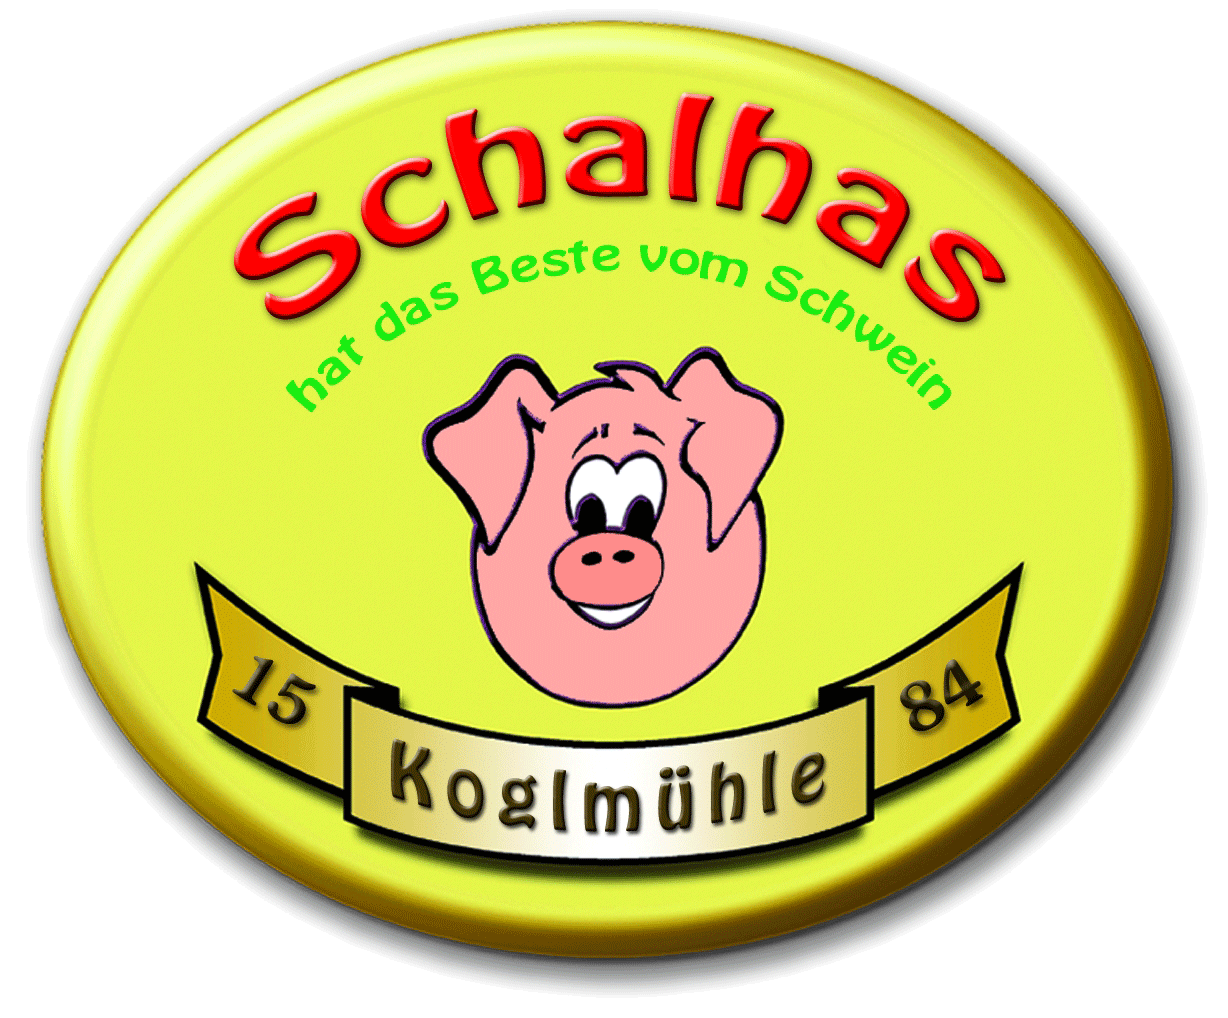 (c) Koglmuehle-schalhas.at